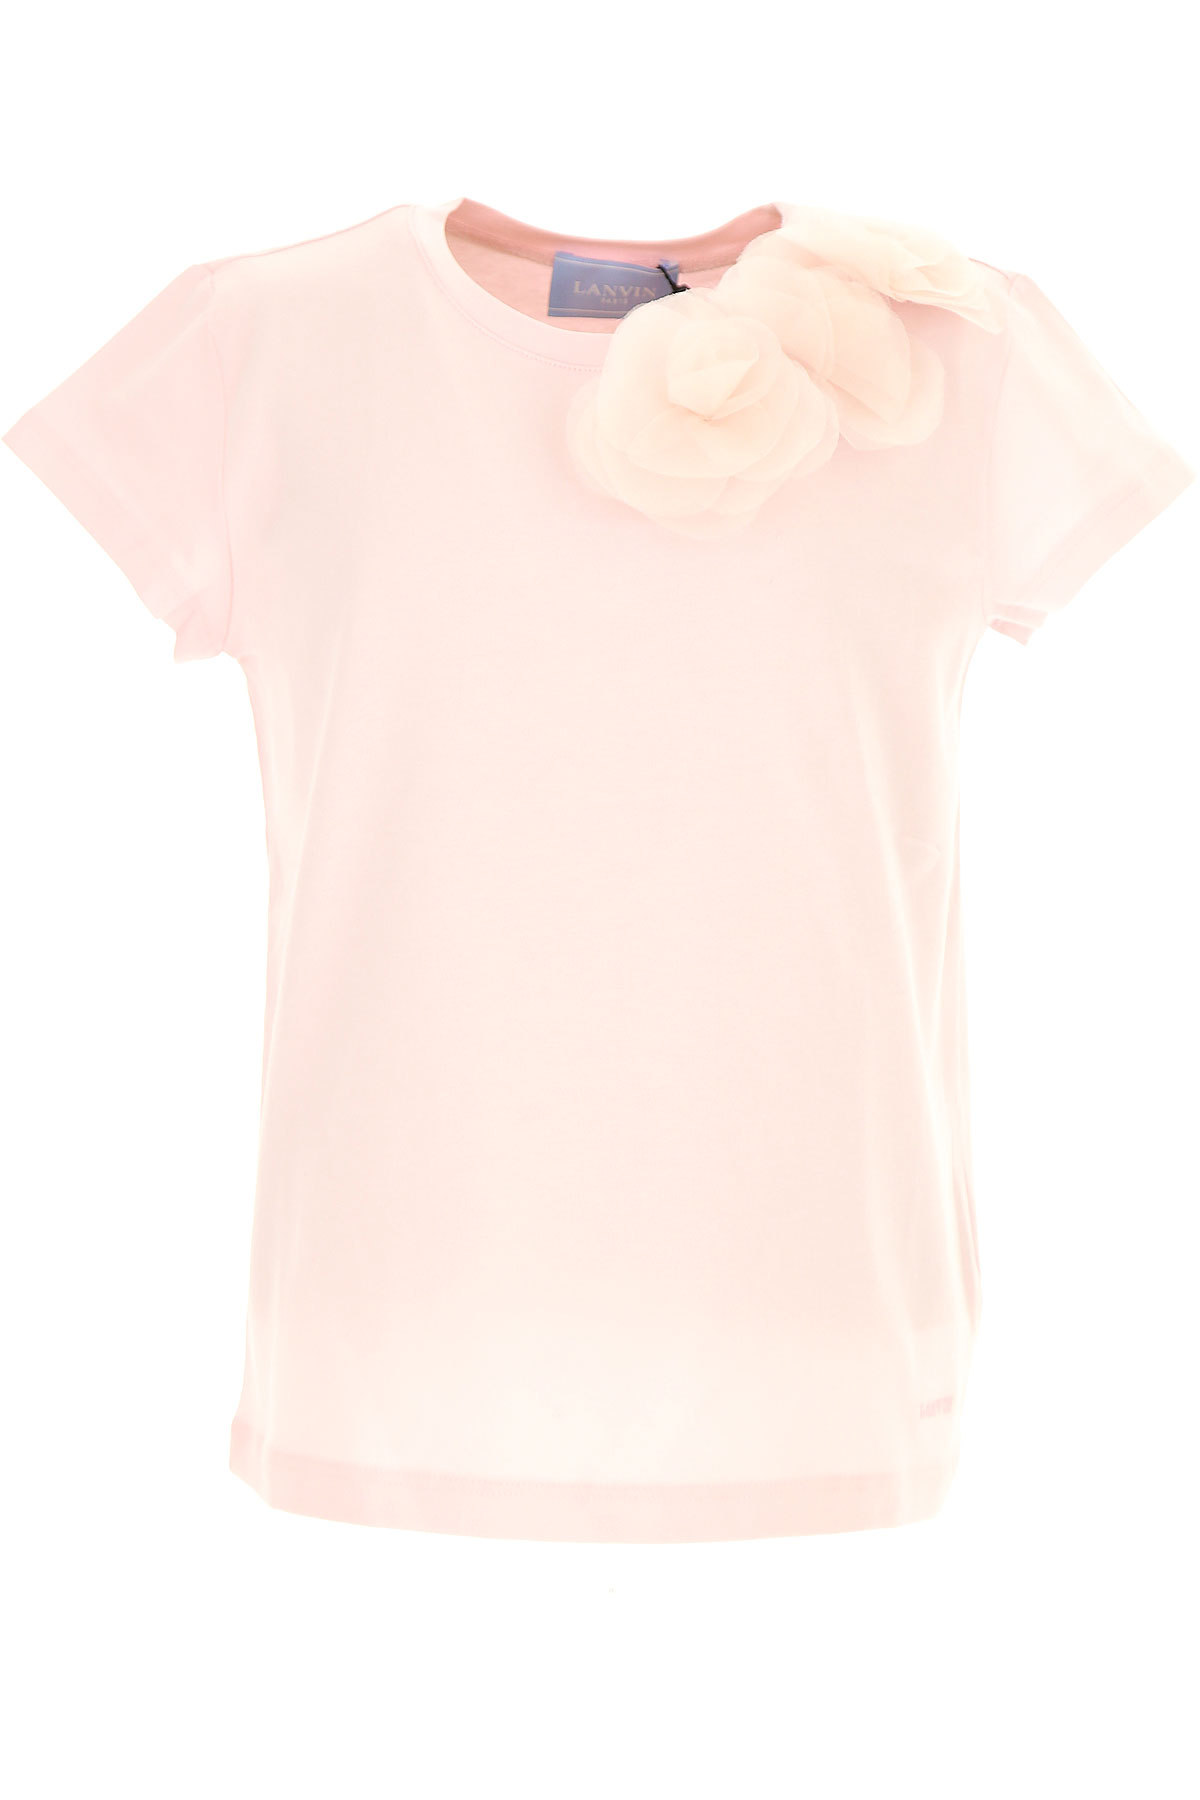 Lanvin T-Shirt Enfant pour Fille, Rose, Coton, 2017, 10Y 12Y 4Y 5Y 6Y 8Y